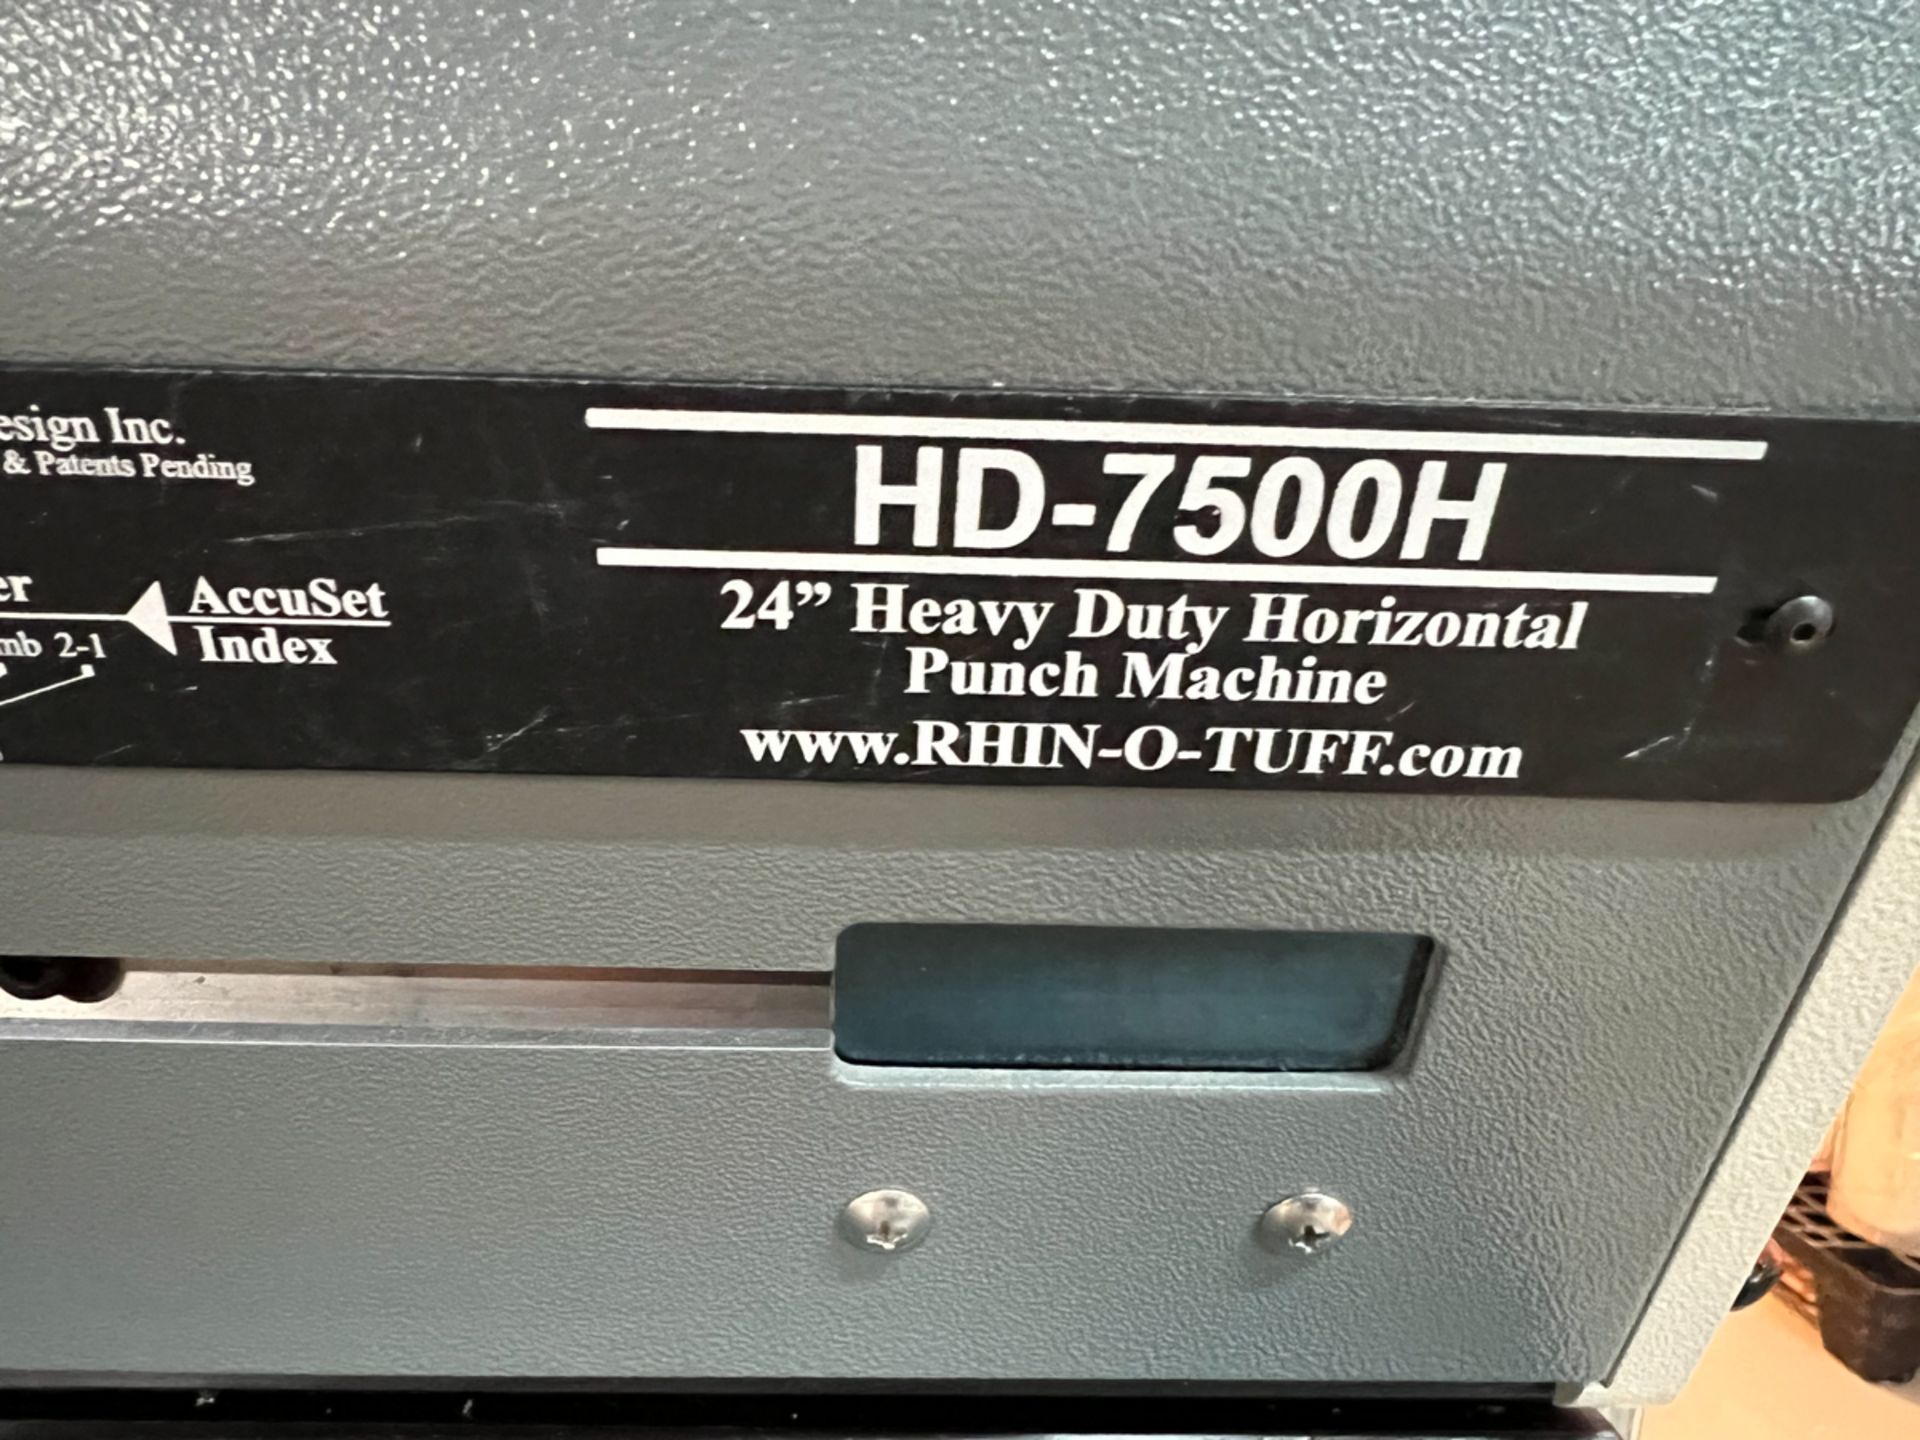 RIHNO -TUF HD-7500H 24" HEAVY DUTY HORIZONTAL PUNCH MACHINE - Image 2 of 2